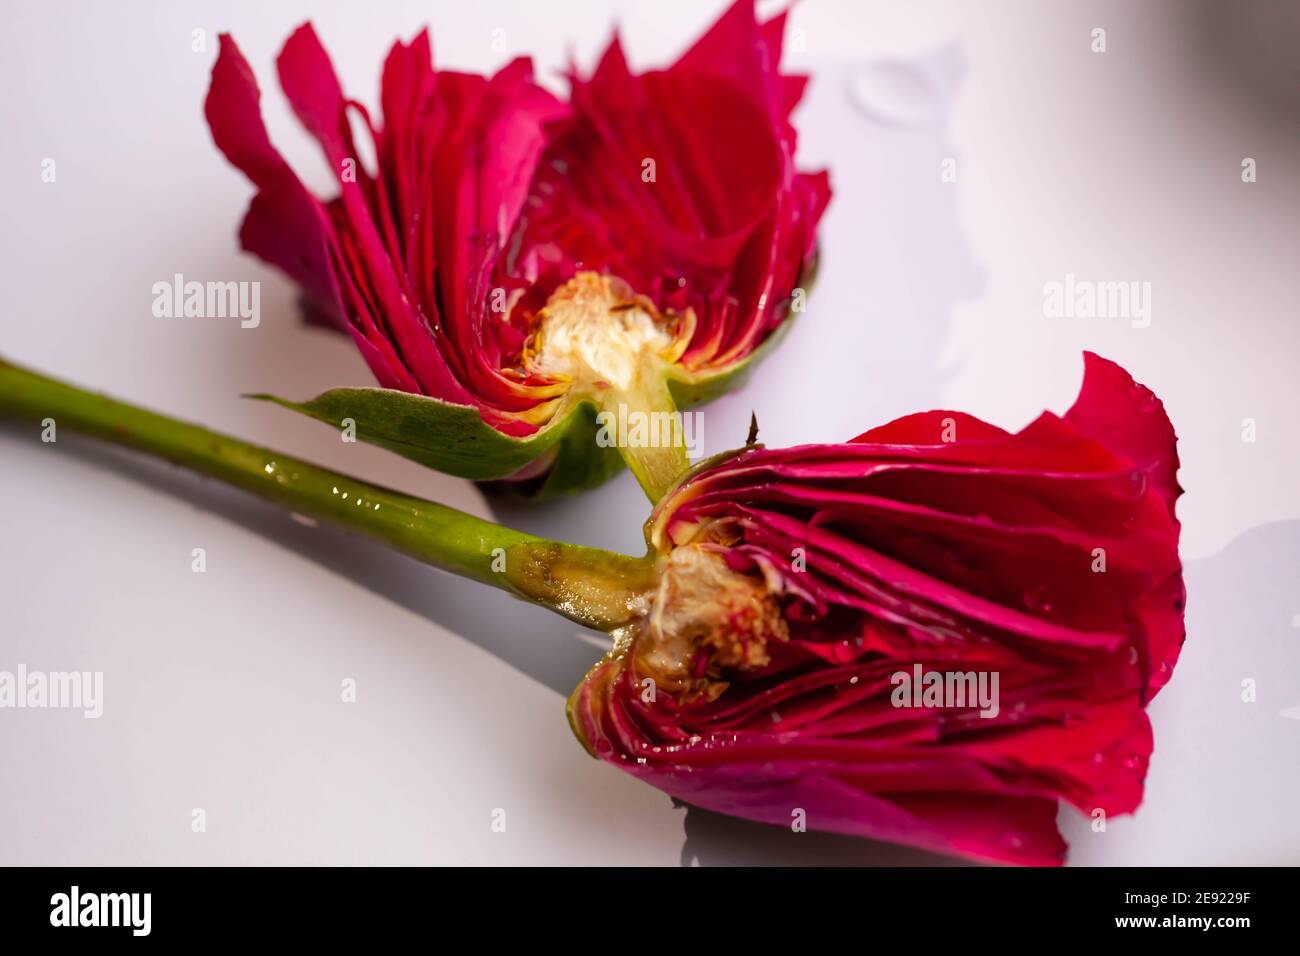 Détail intérieur d'une rose rouge coupé en deux moitiés Photo Stock - Alamy